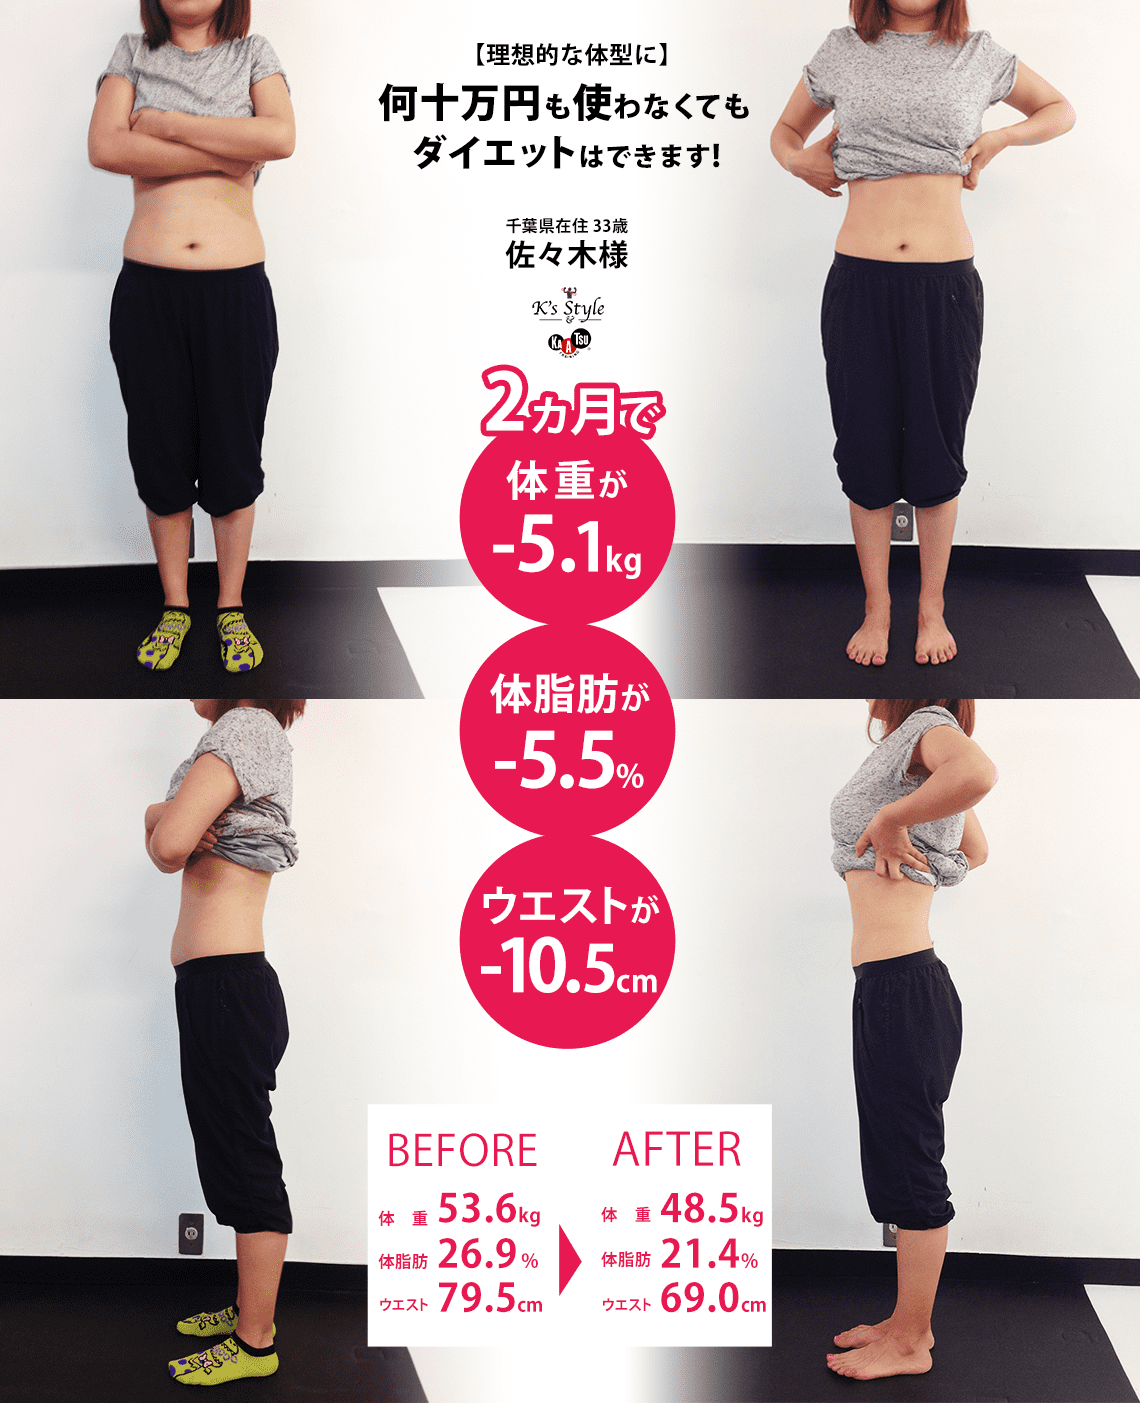 理想的な体型に何十万円も使わなくても集中パーソナルトレーニングでダイエットはできます！体験者の佐々木さんは2か月で体重が5kg痩せました